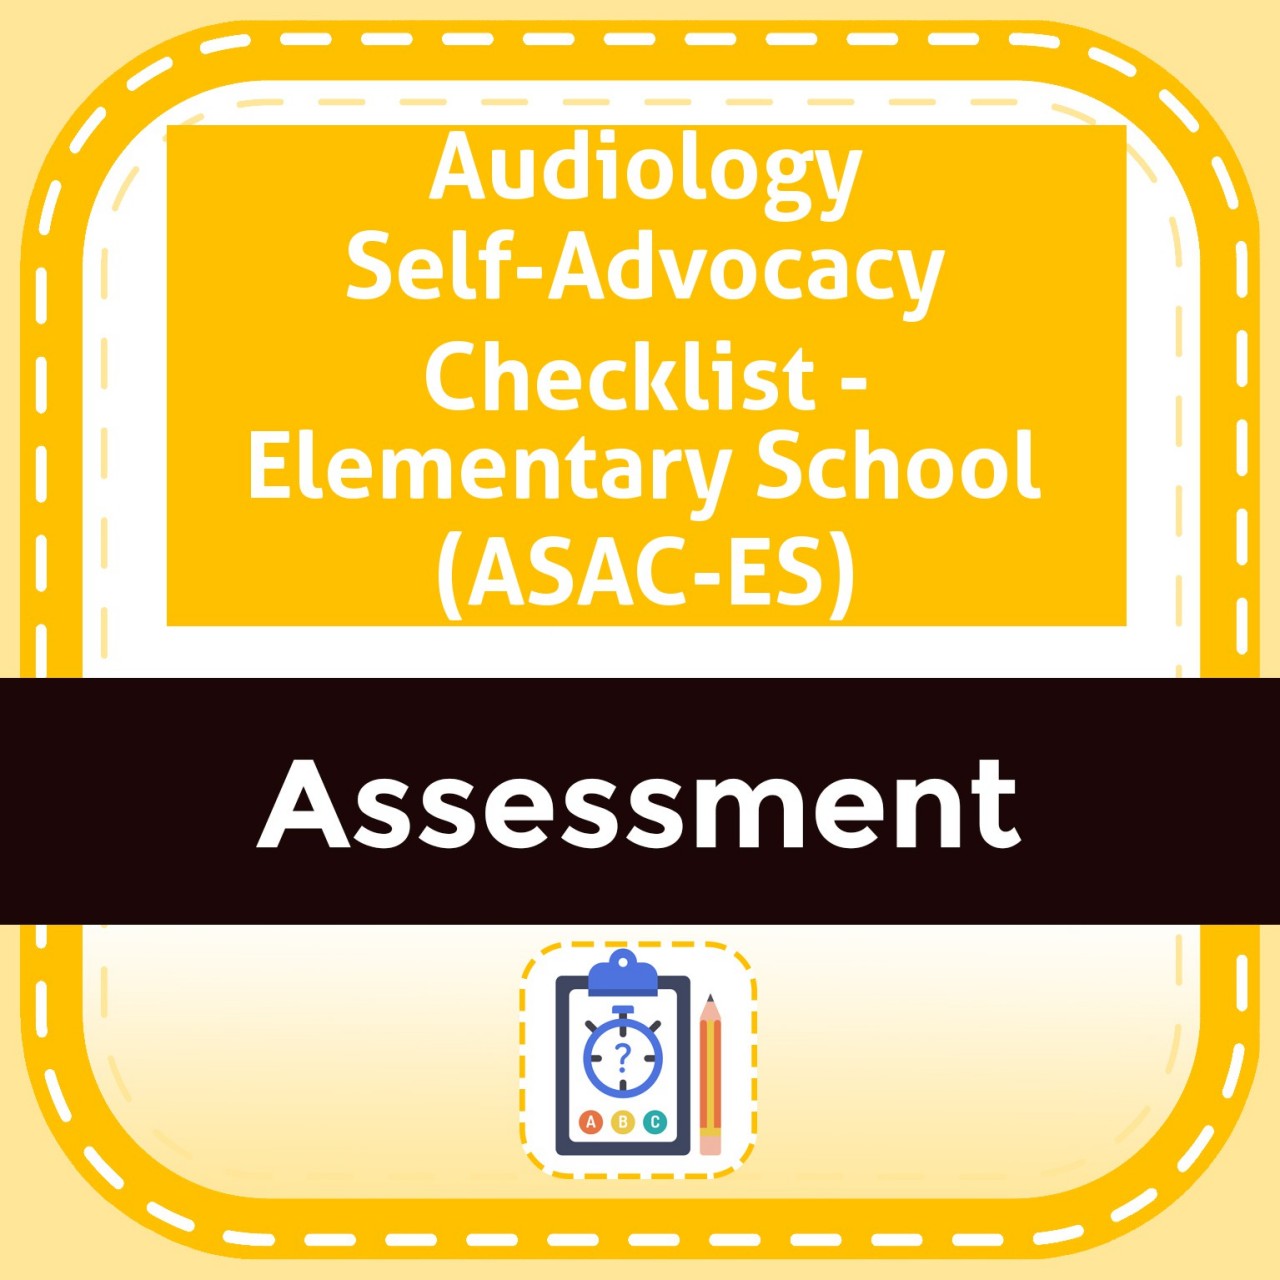 Audiology Self-Advocacy Checklist - Elementary School (ASAC-ES)